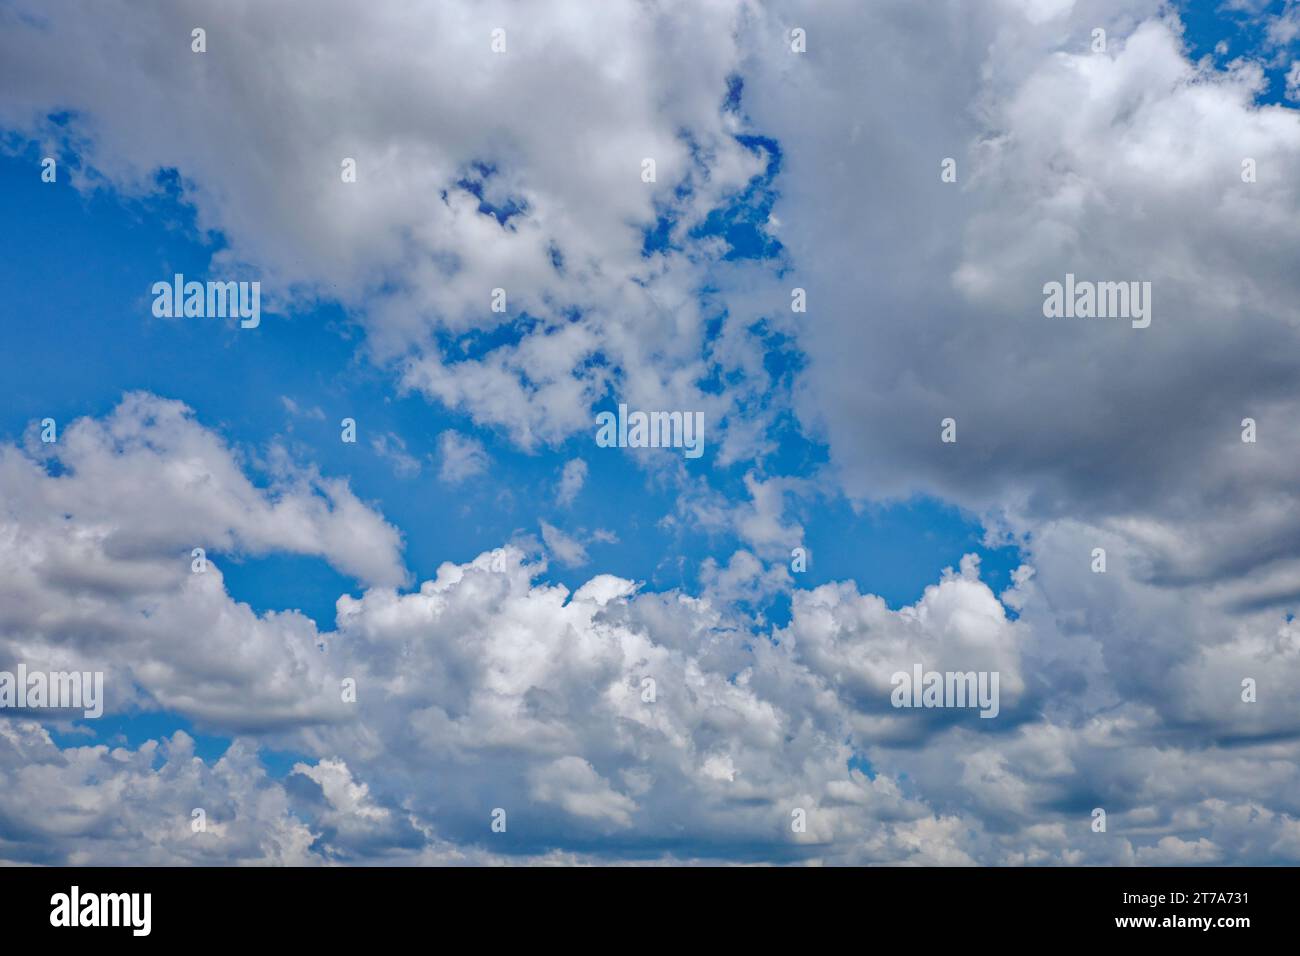 Diese fesselnde Szene bietet einen ruhigen blauen Himmel, der von flauschigen Wolken unterbrochen wird, die zur friedlichen und ruhigen Atmosphäre beitragen. Stockfoto